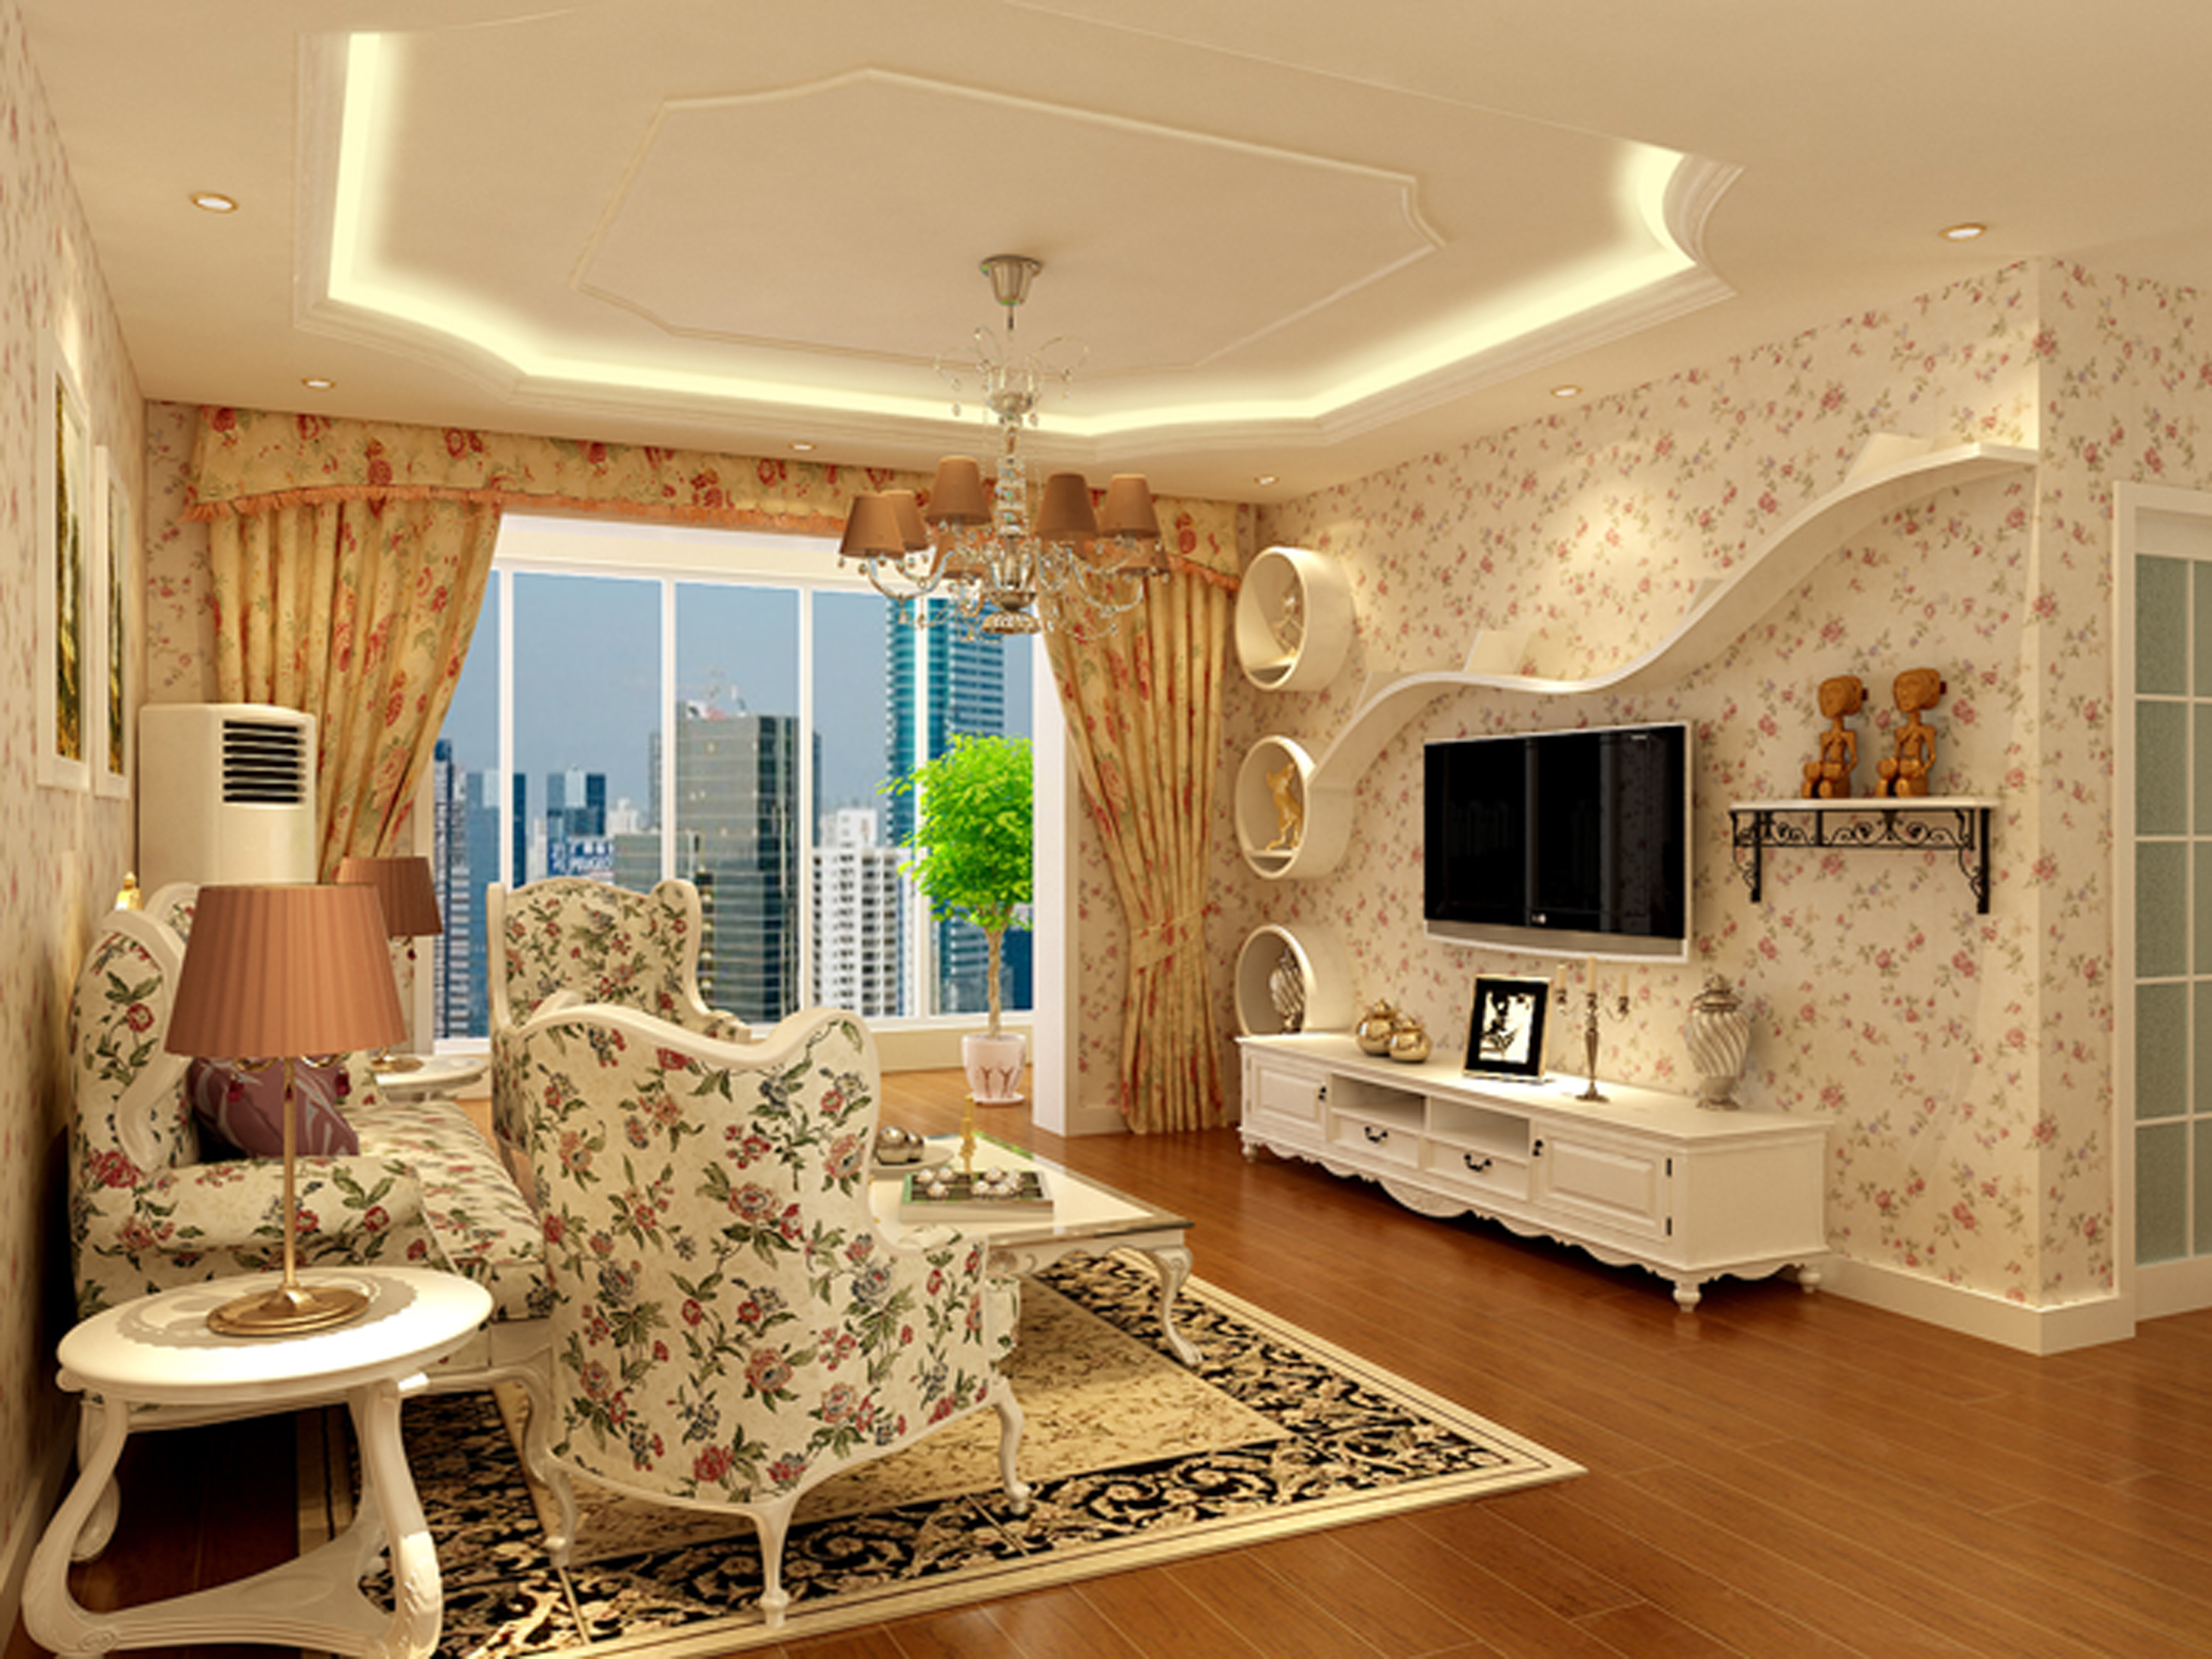 简约 田园 二居 三居 客厅图片来自北京实创装饰在100840元温馨田园二居的分享